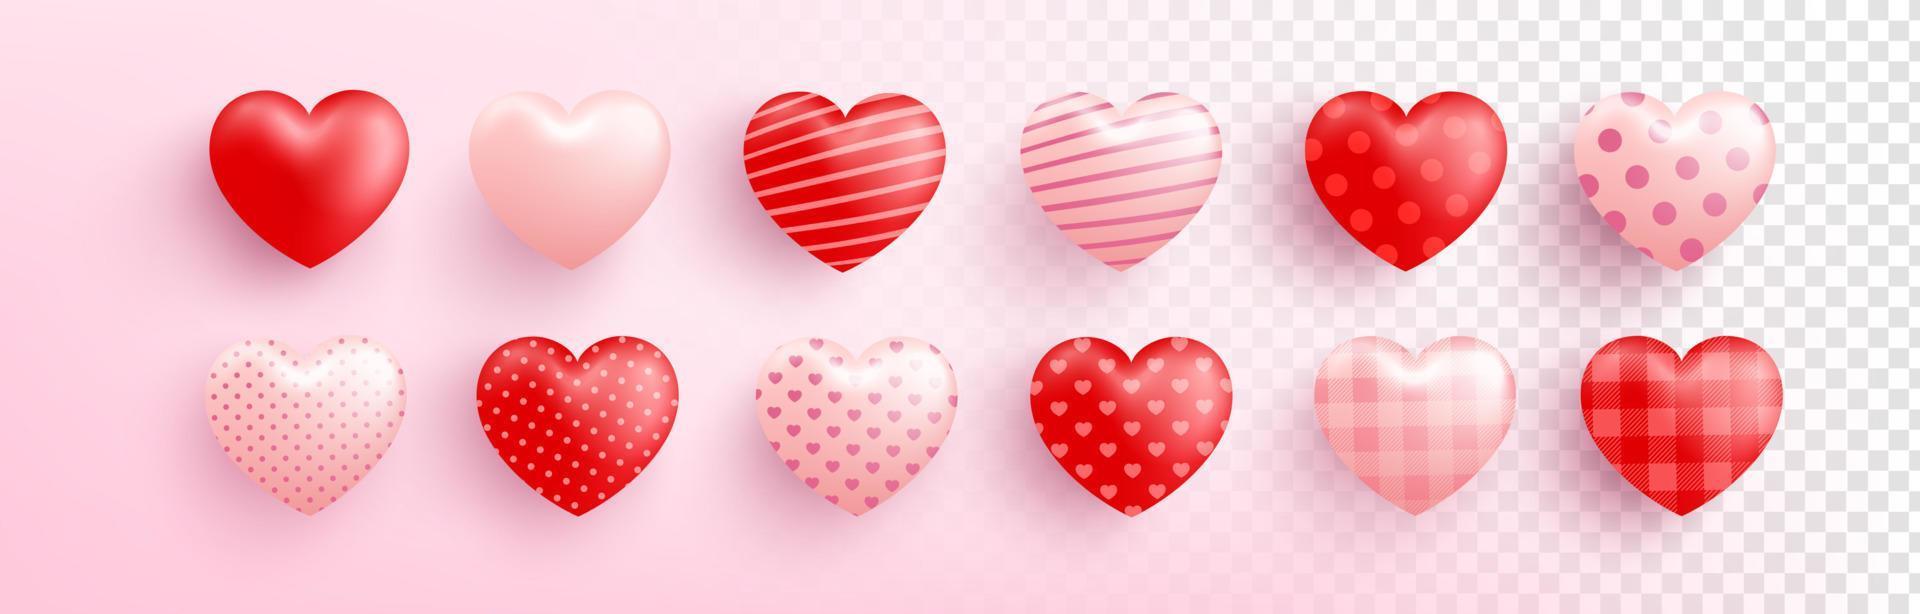 cuore dolce rosso e rosa con diversi modelli su sfondo trasparente. cuore carino per amore e modello di san valentino. illustrazione vettoriale eps 10